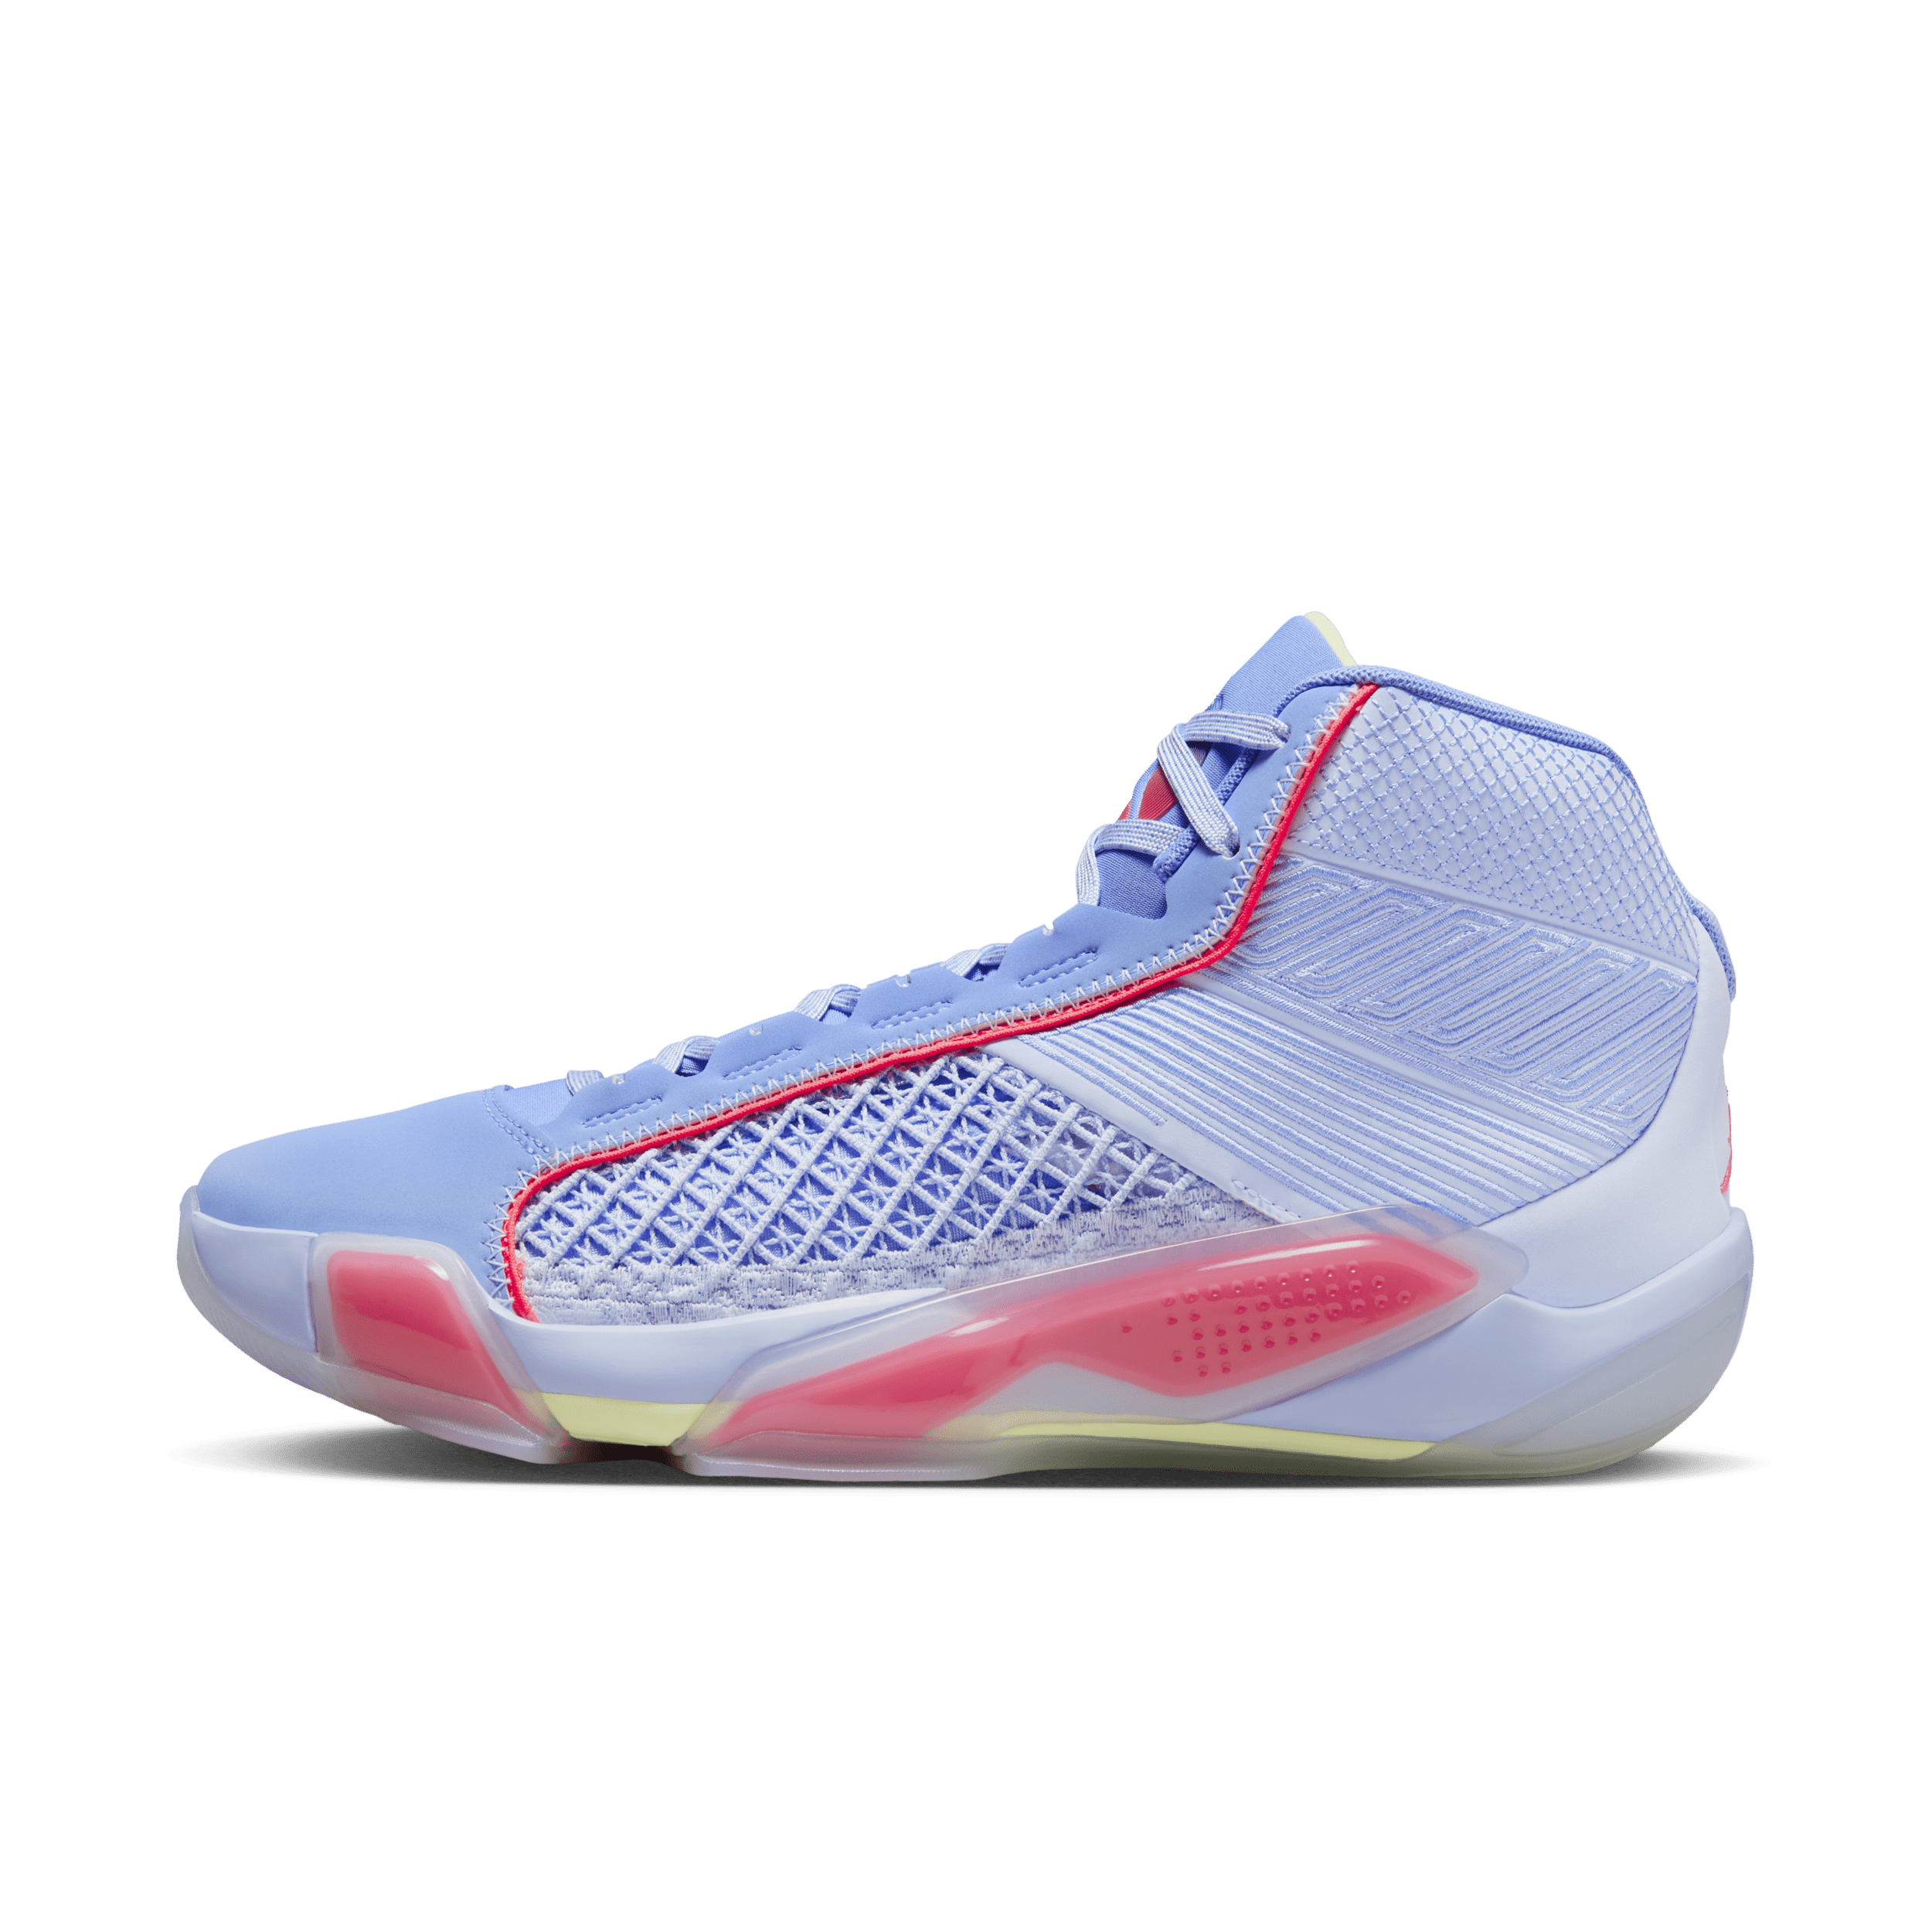 Image of Air Jordan XXXVIII basketbalschoenen - Blauw